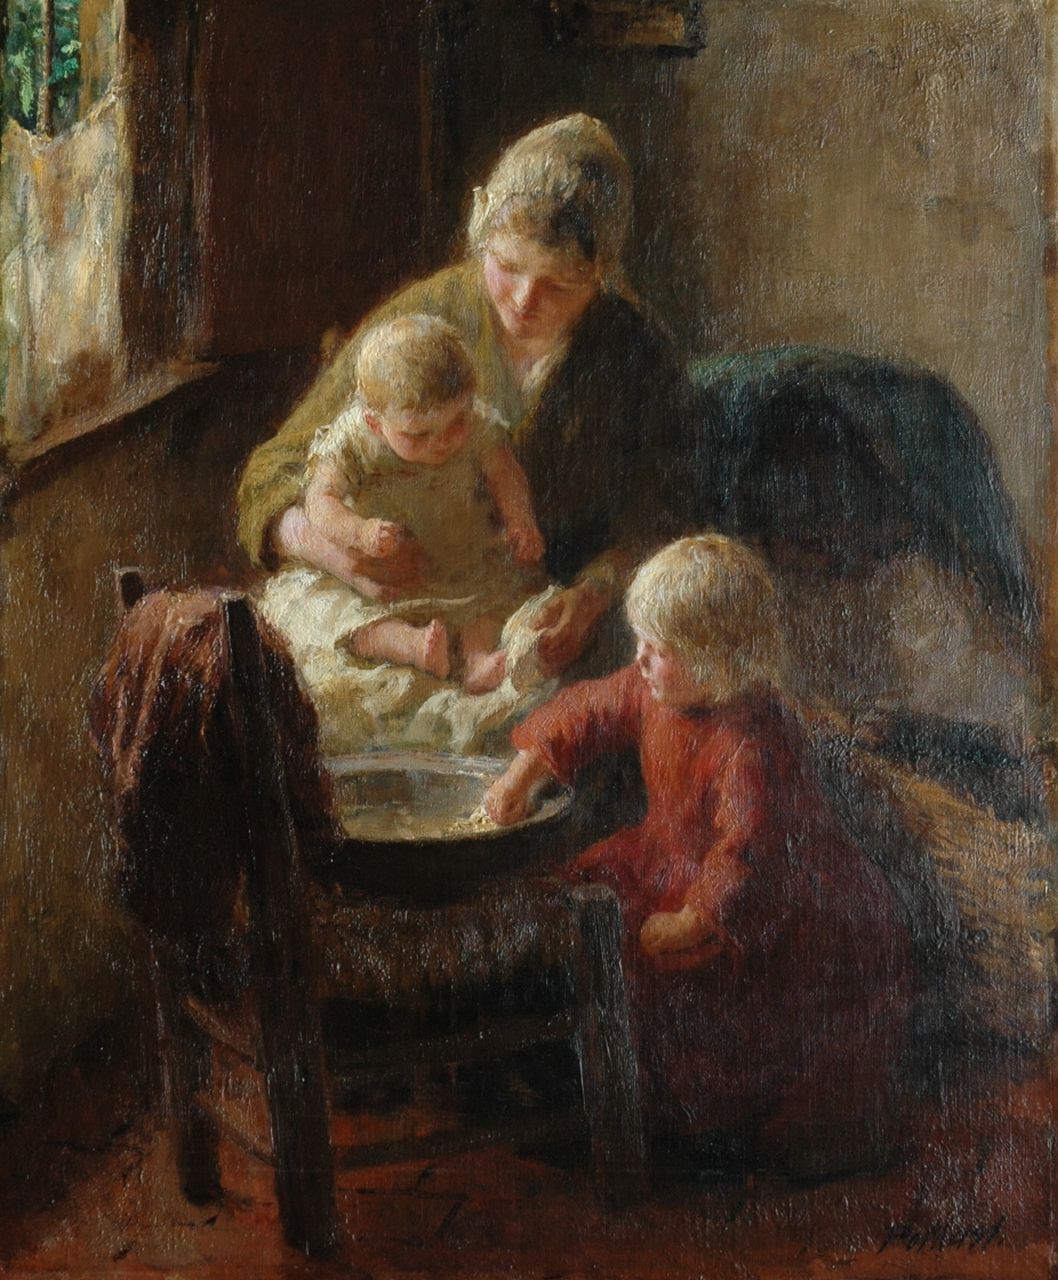 Pothast B.J.C.  | 'Bernard' Jean Corneille Pothast, Samen de baby wassen, olieverf op doek 55,1 x 45,7 cm, gesigneerd rechtsonder